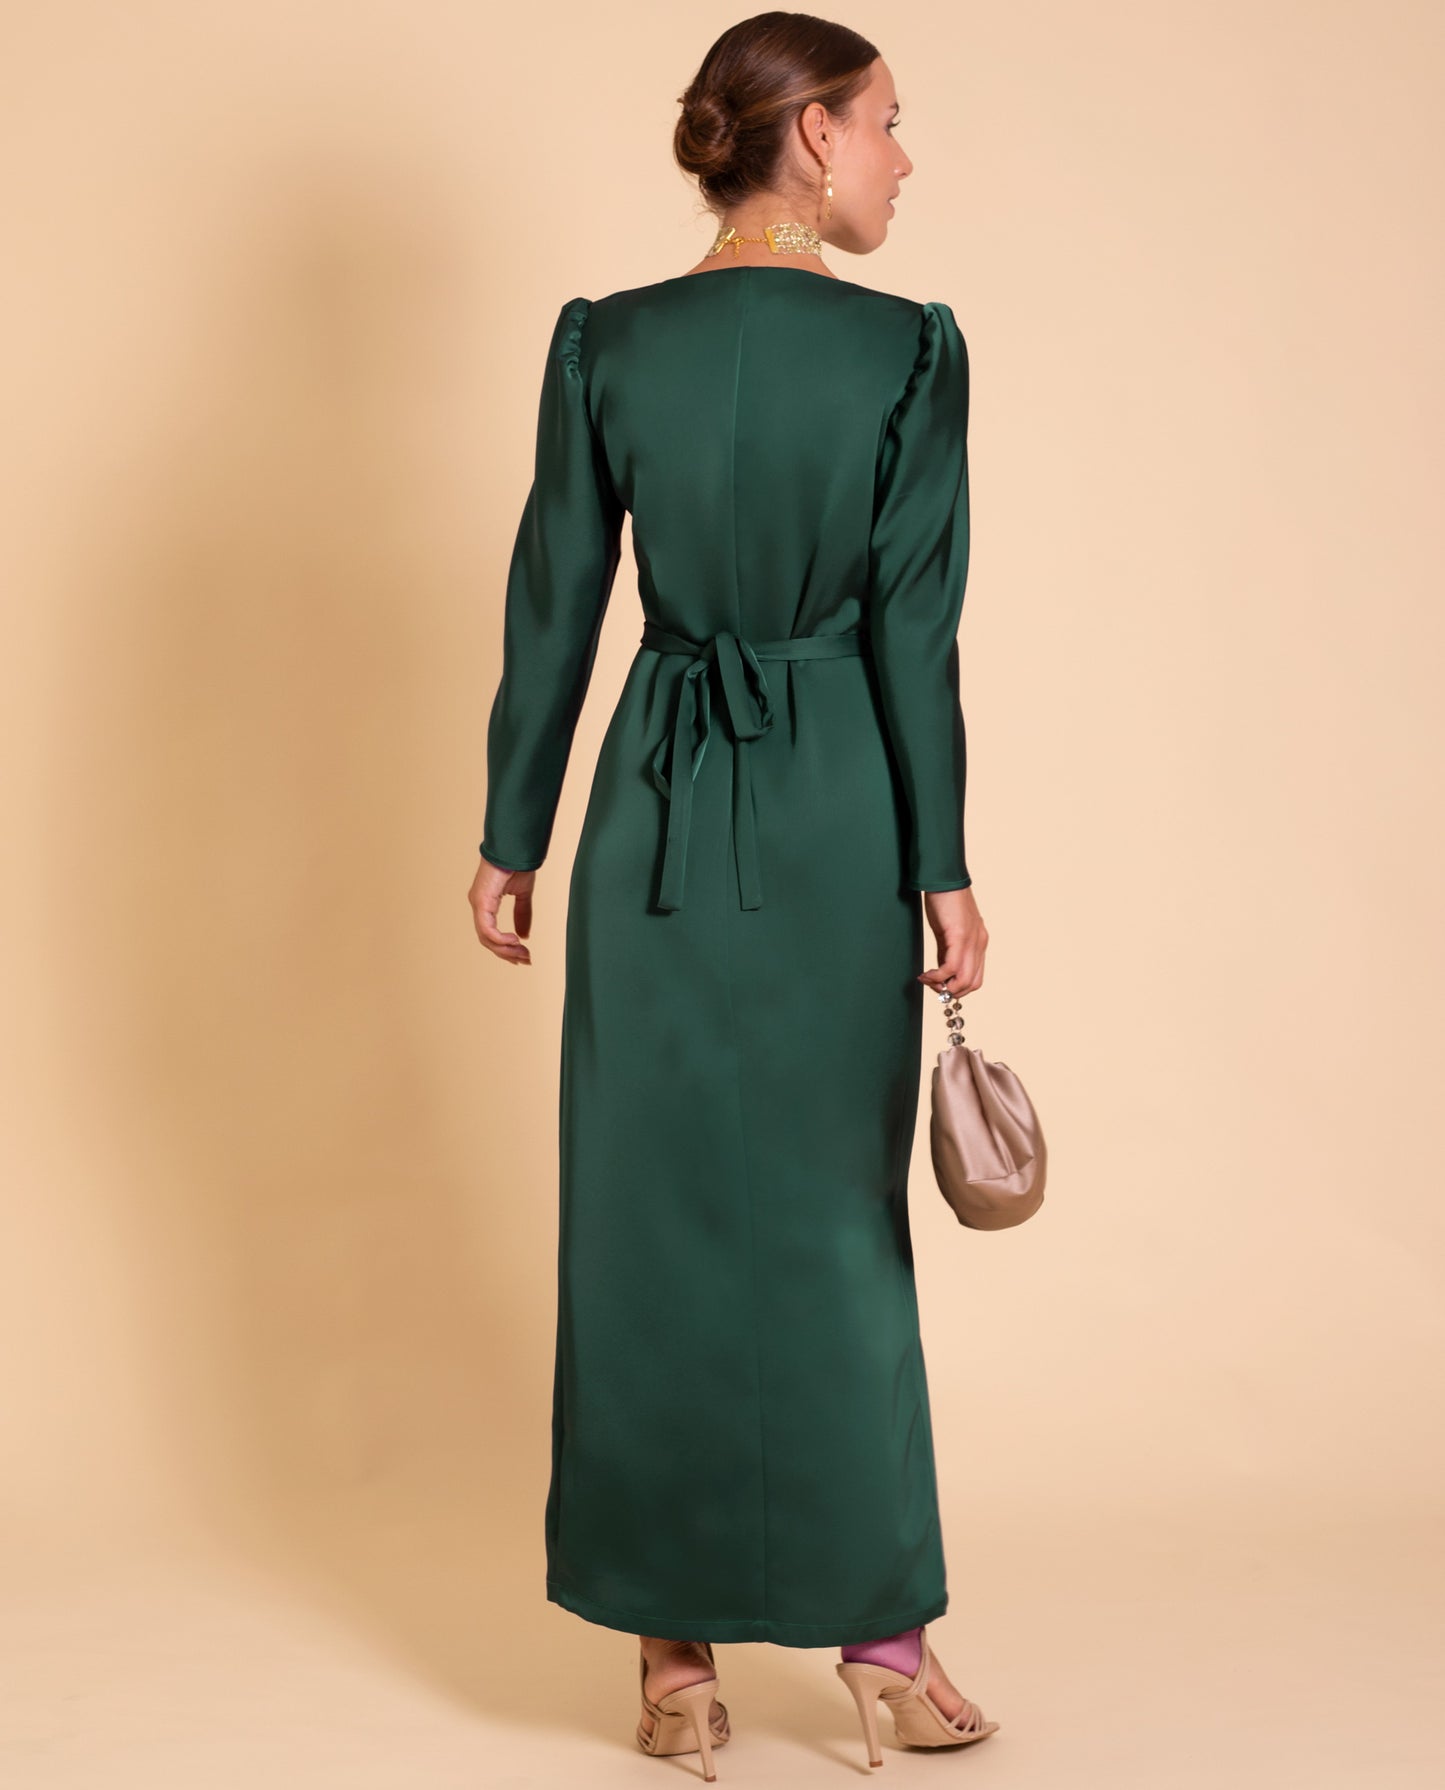 VESTIDO MRS. MONTOYA | Vestido Largo Verde Cruzado Elegante | Colección Eventos THE-ARE